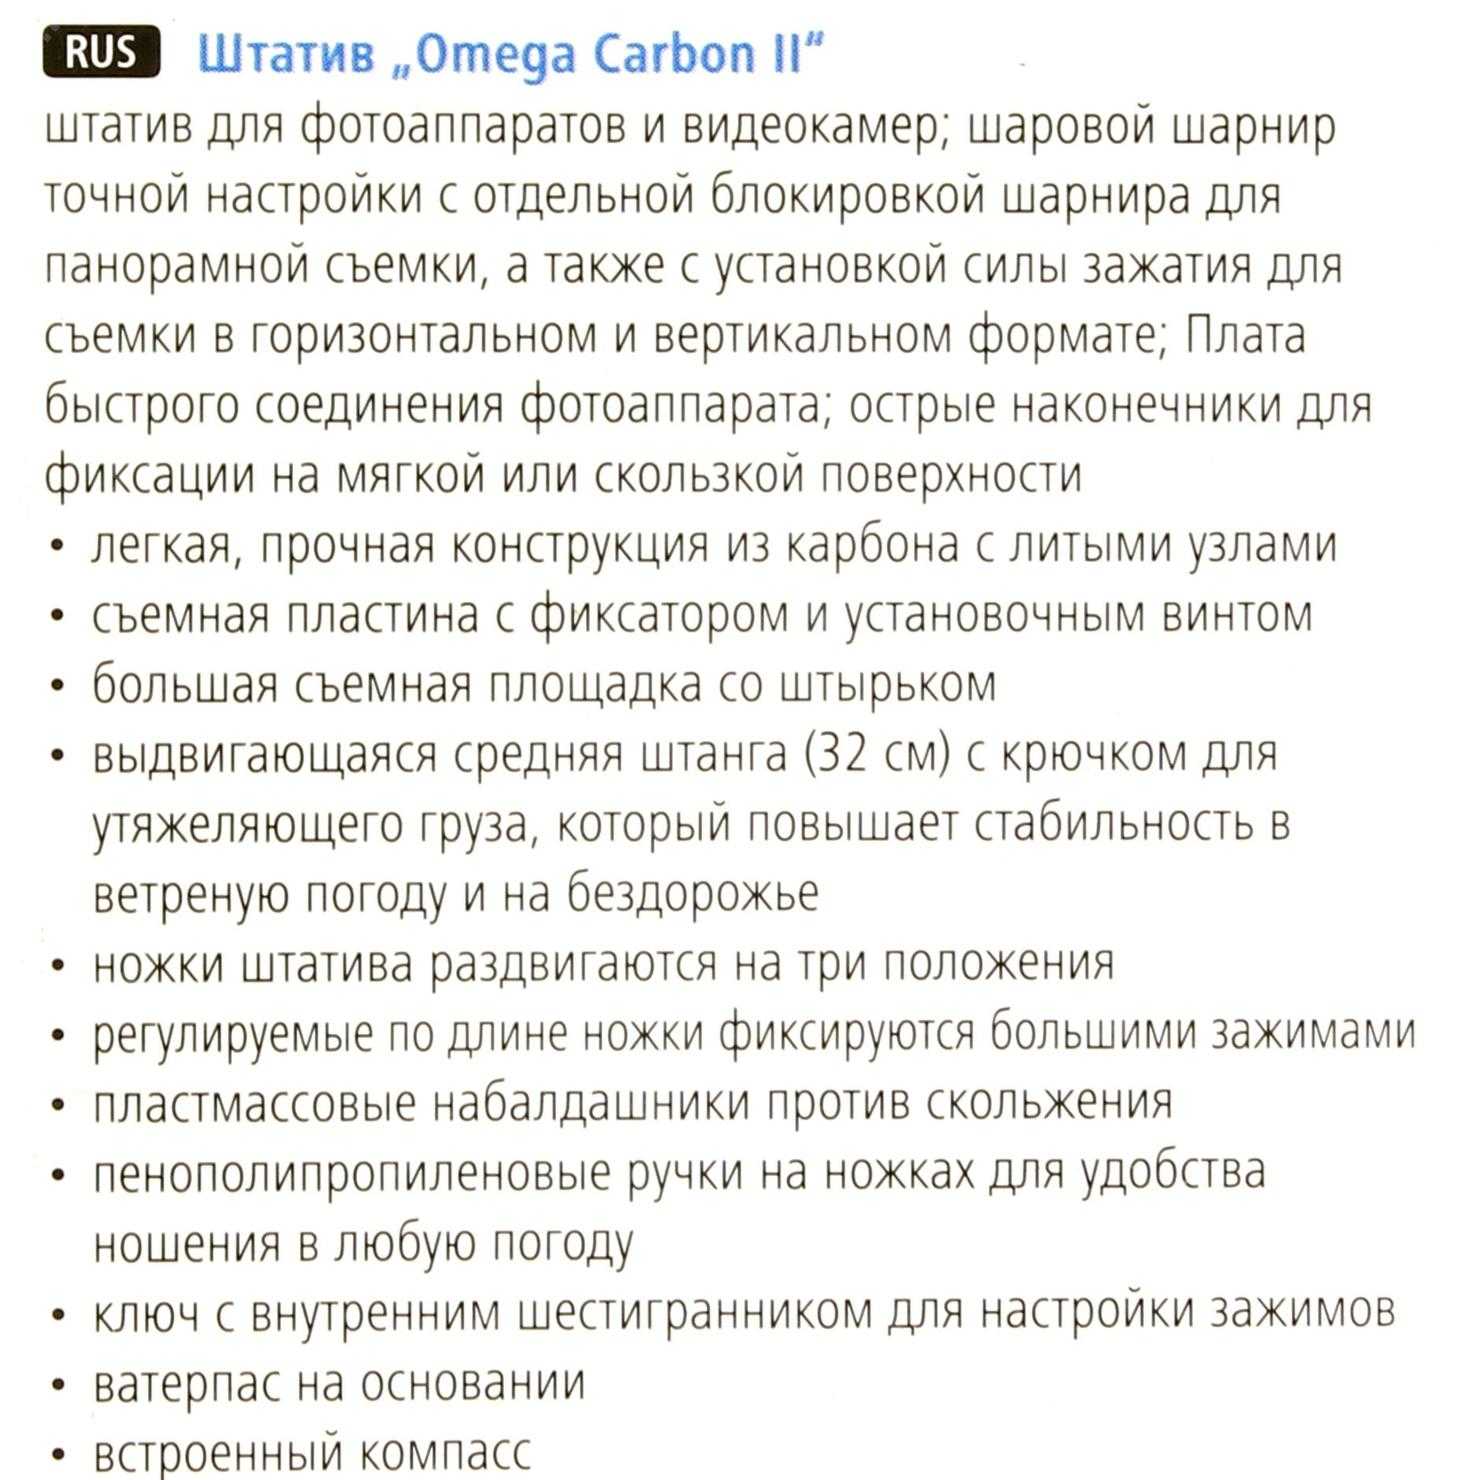 Штатив hama omega carbon ii (4292) — купить, цена и характеристики, отзывы